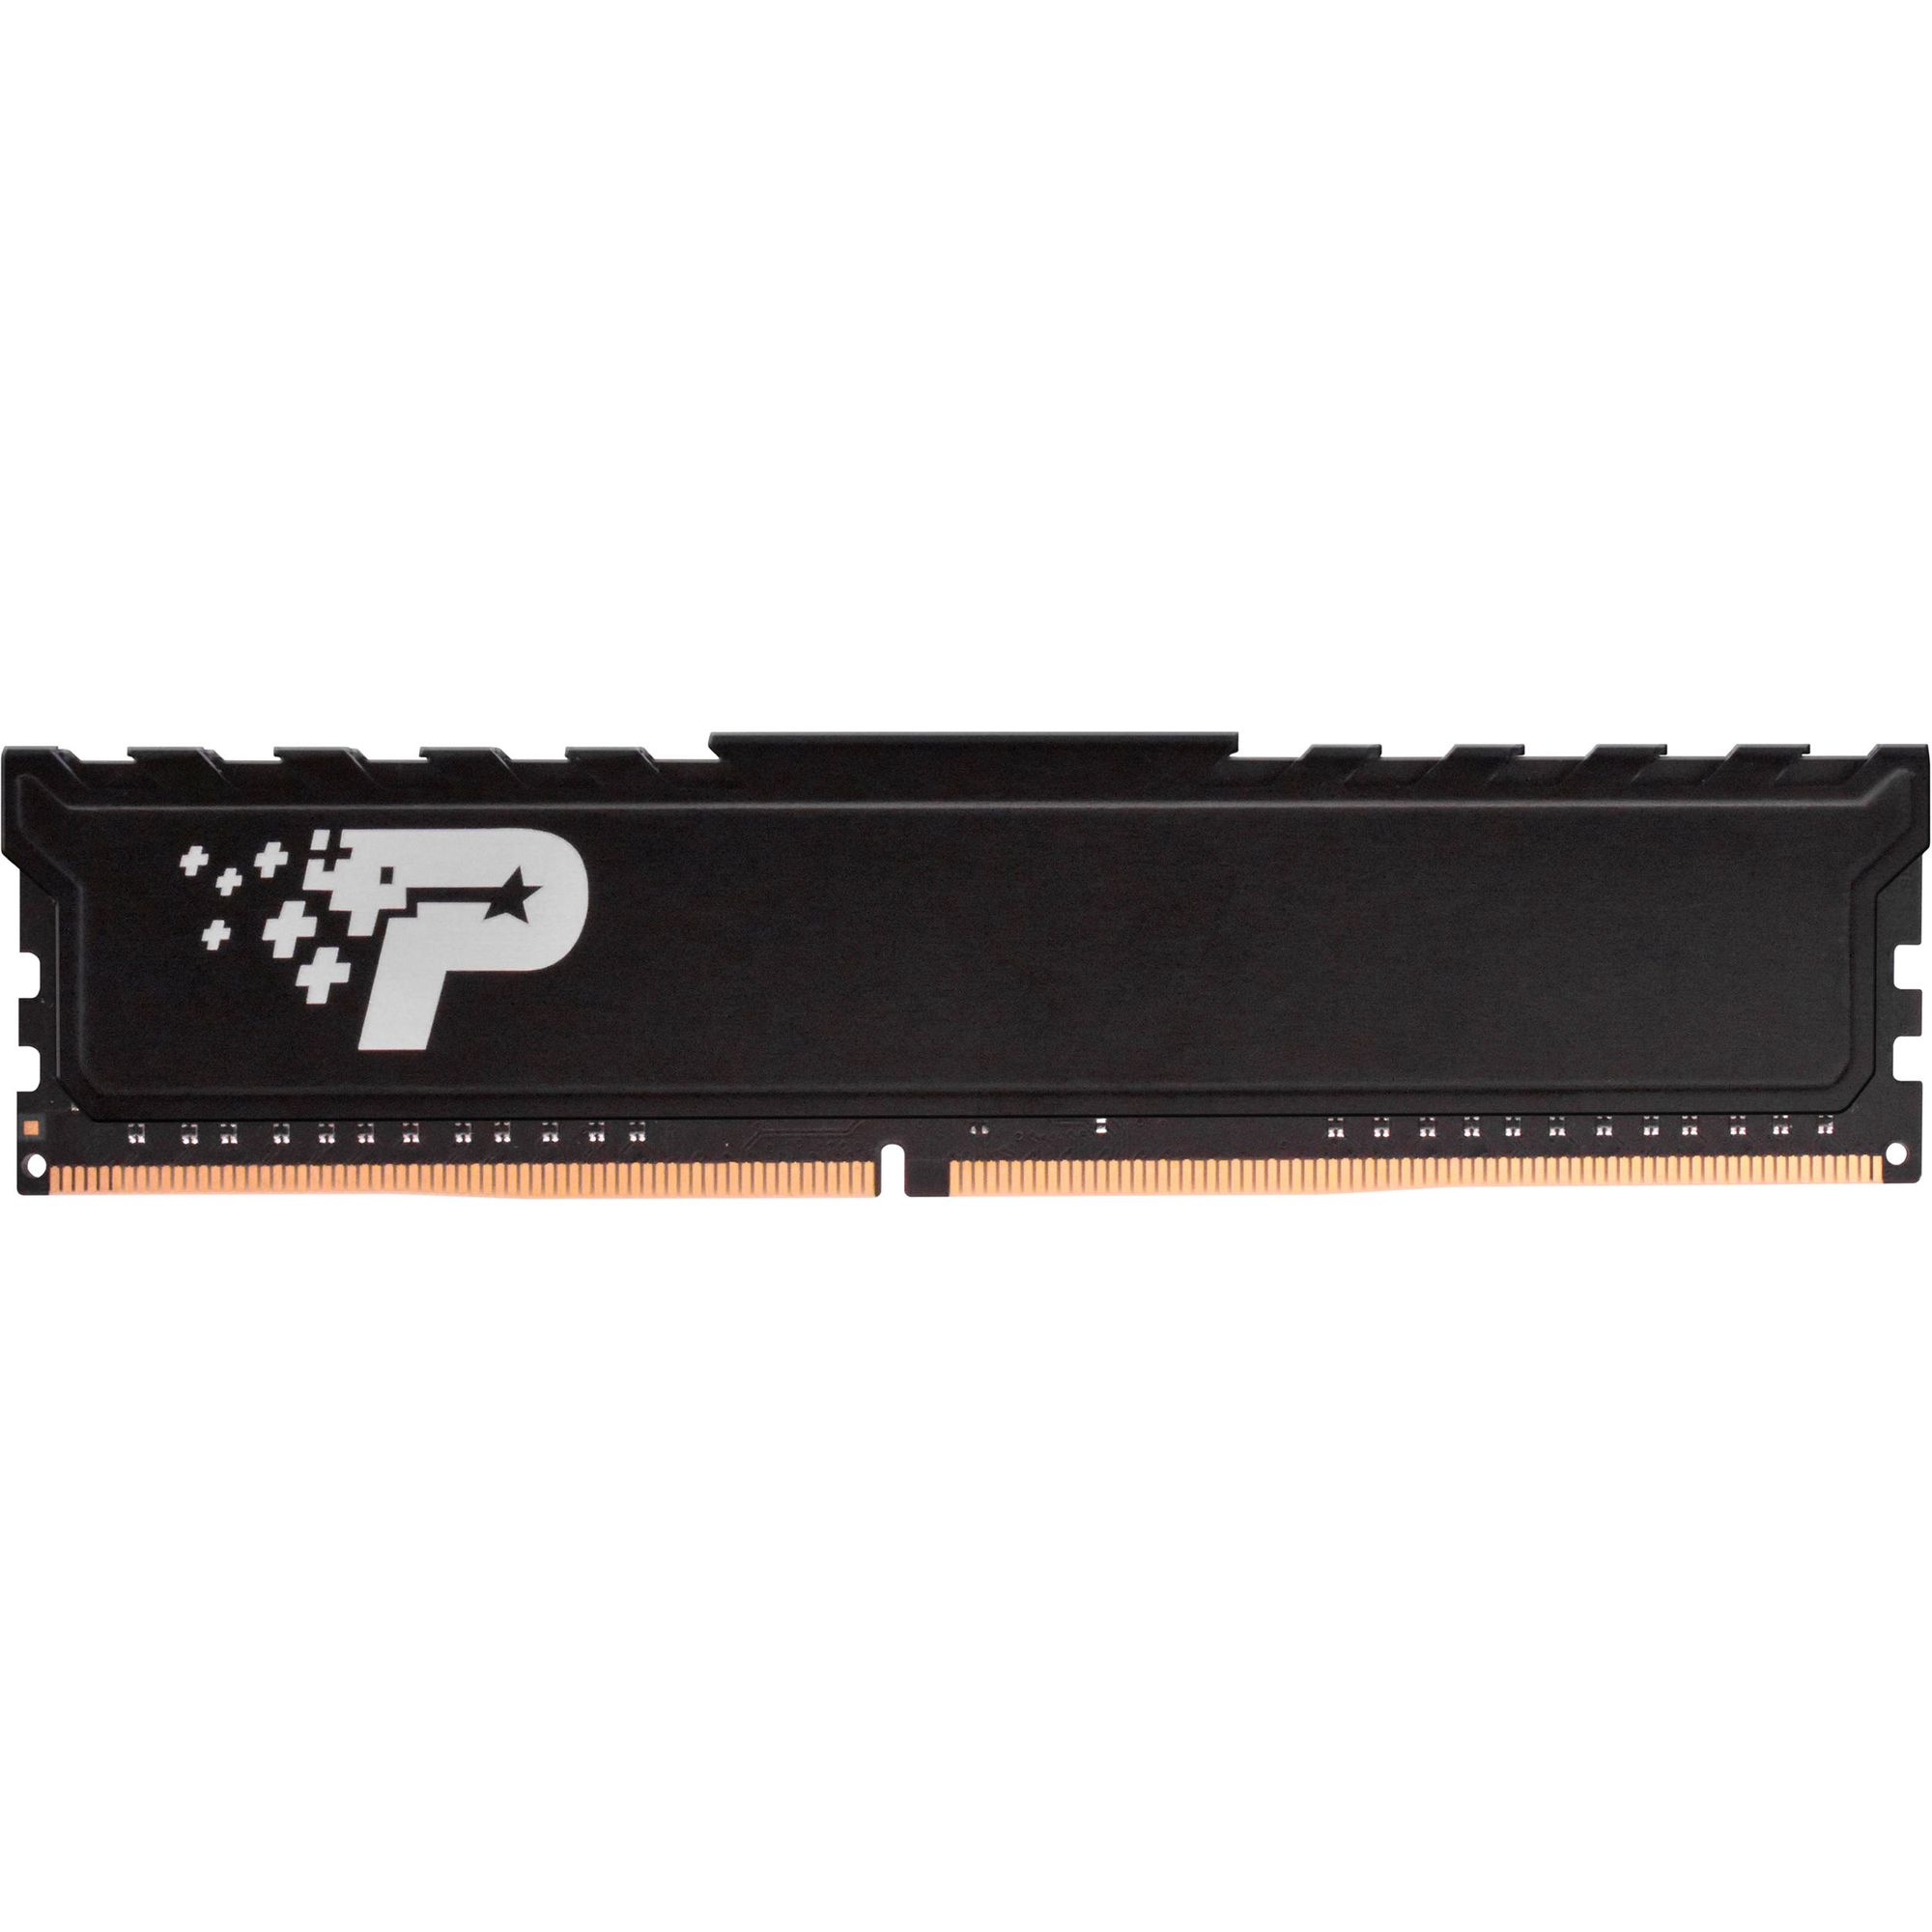 Память оперативная DDR4 Patriot Memory SL Premium 16Gb 2666MHz (PSP416G26662H1) память оперативная ddr4 patriot memory sl premium 16gb 2666mhz psp416g26662h1